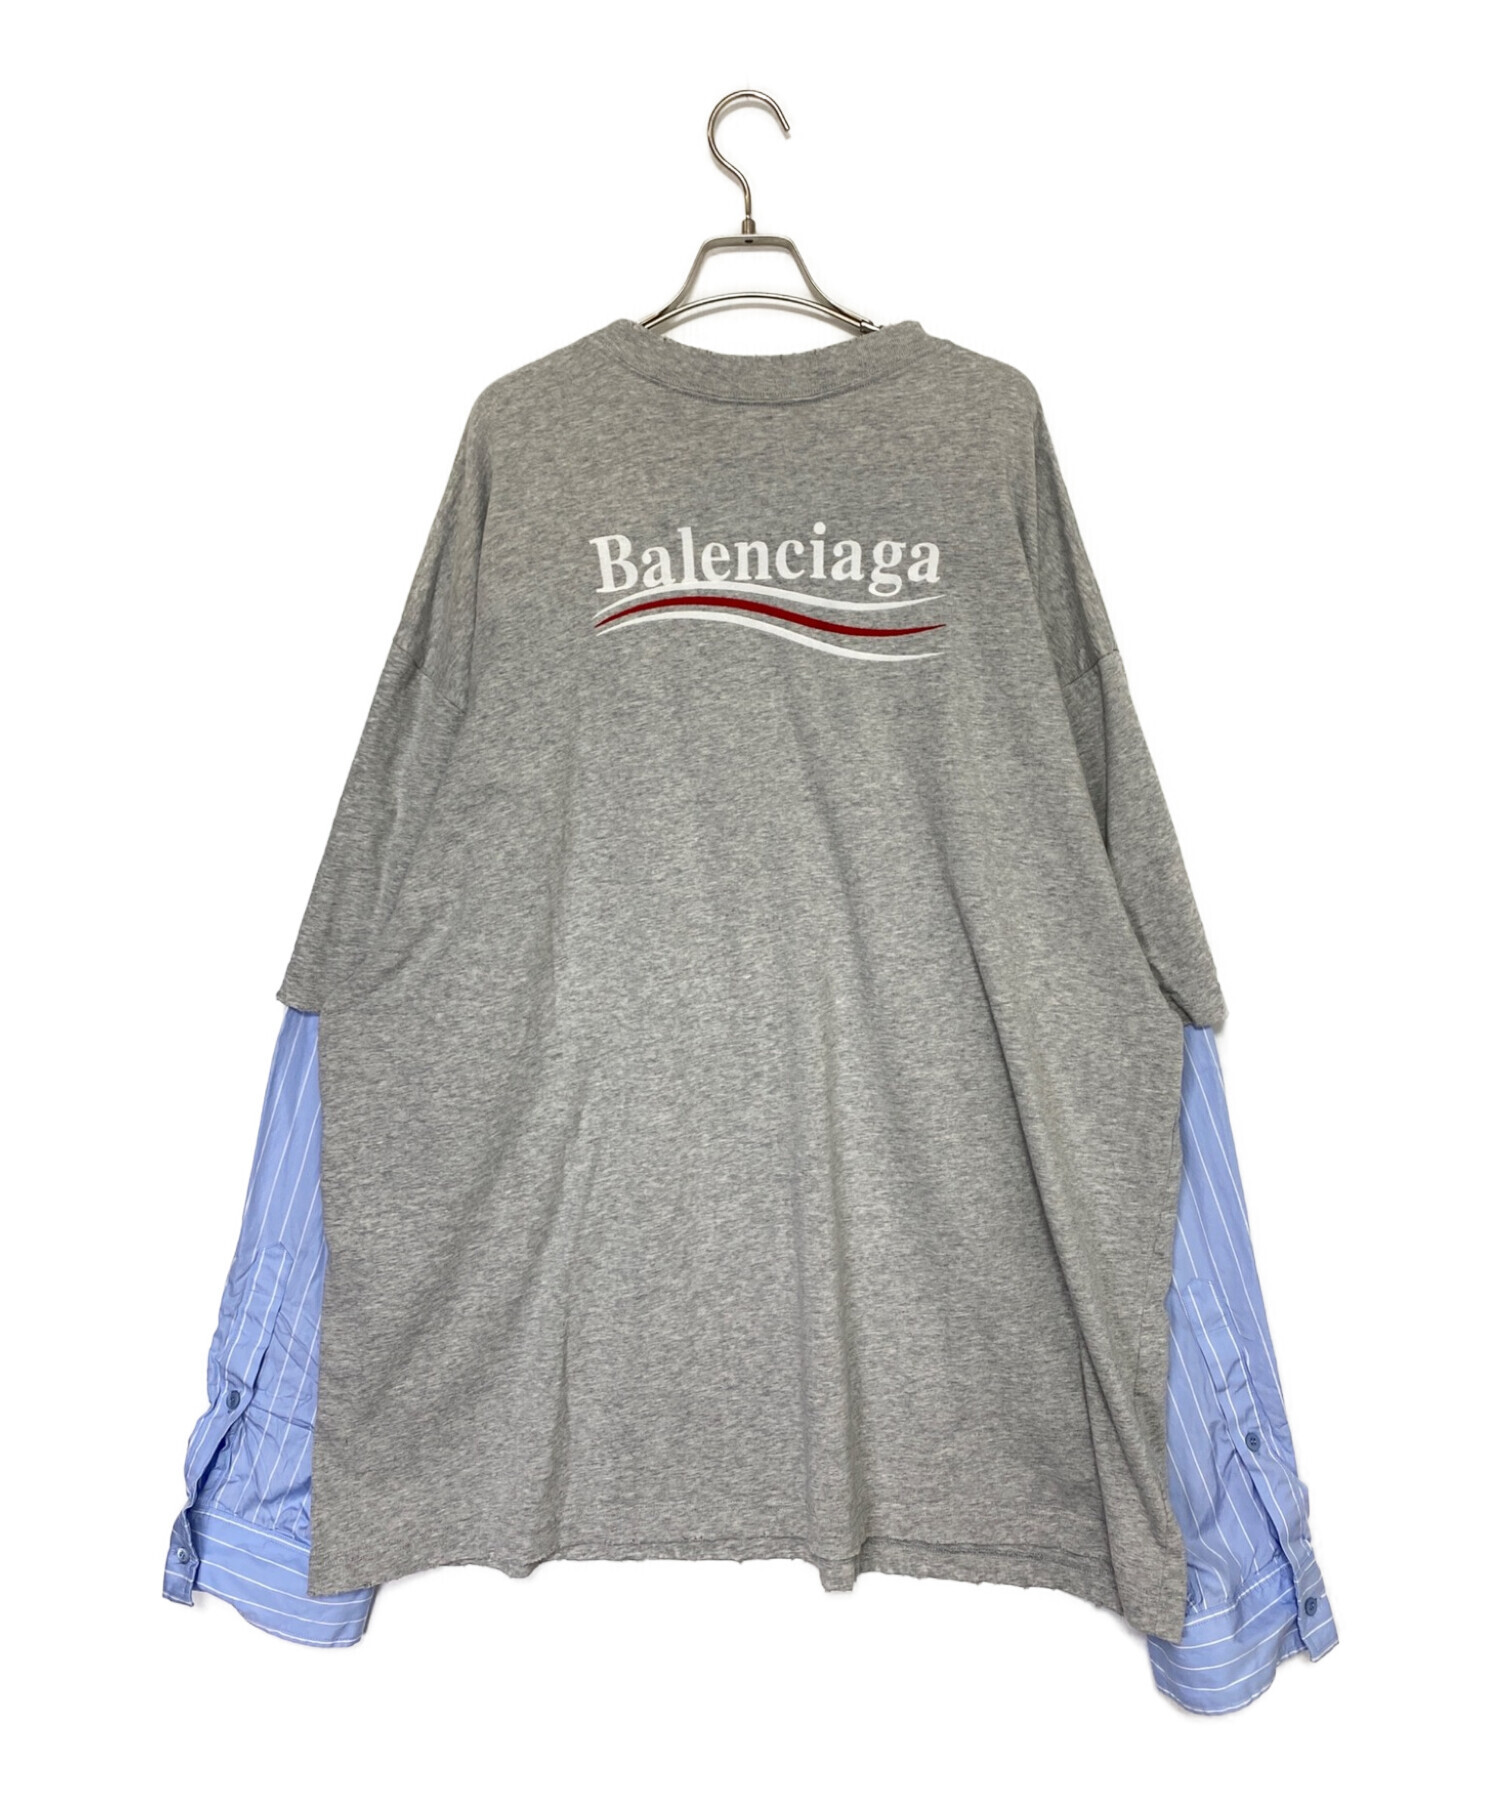 バレンシアガ  balenciaga  Tシャツ  XL  グレー